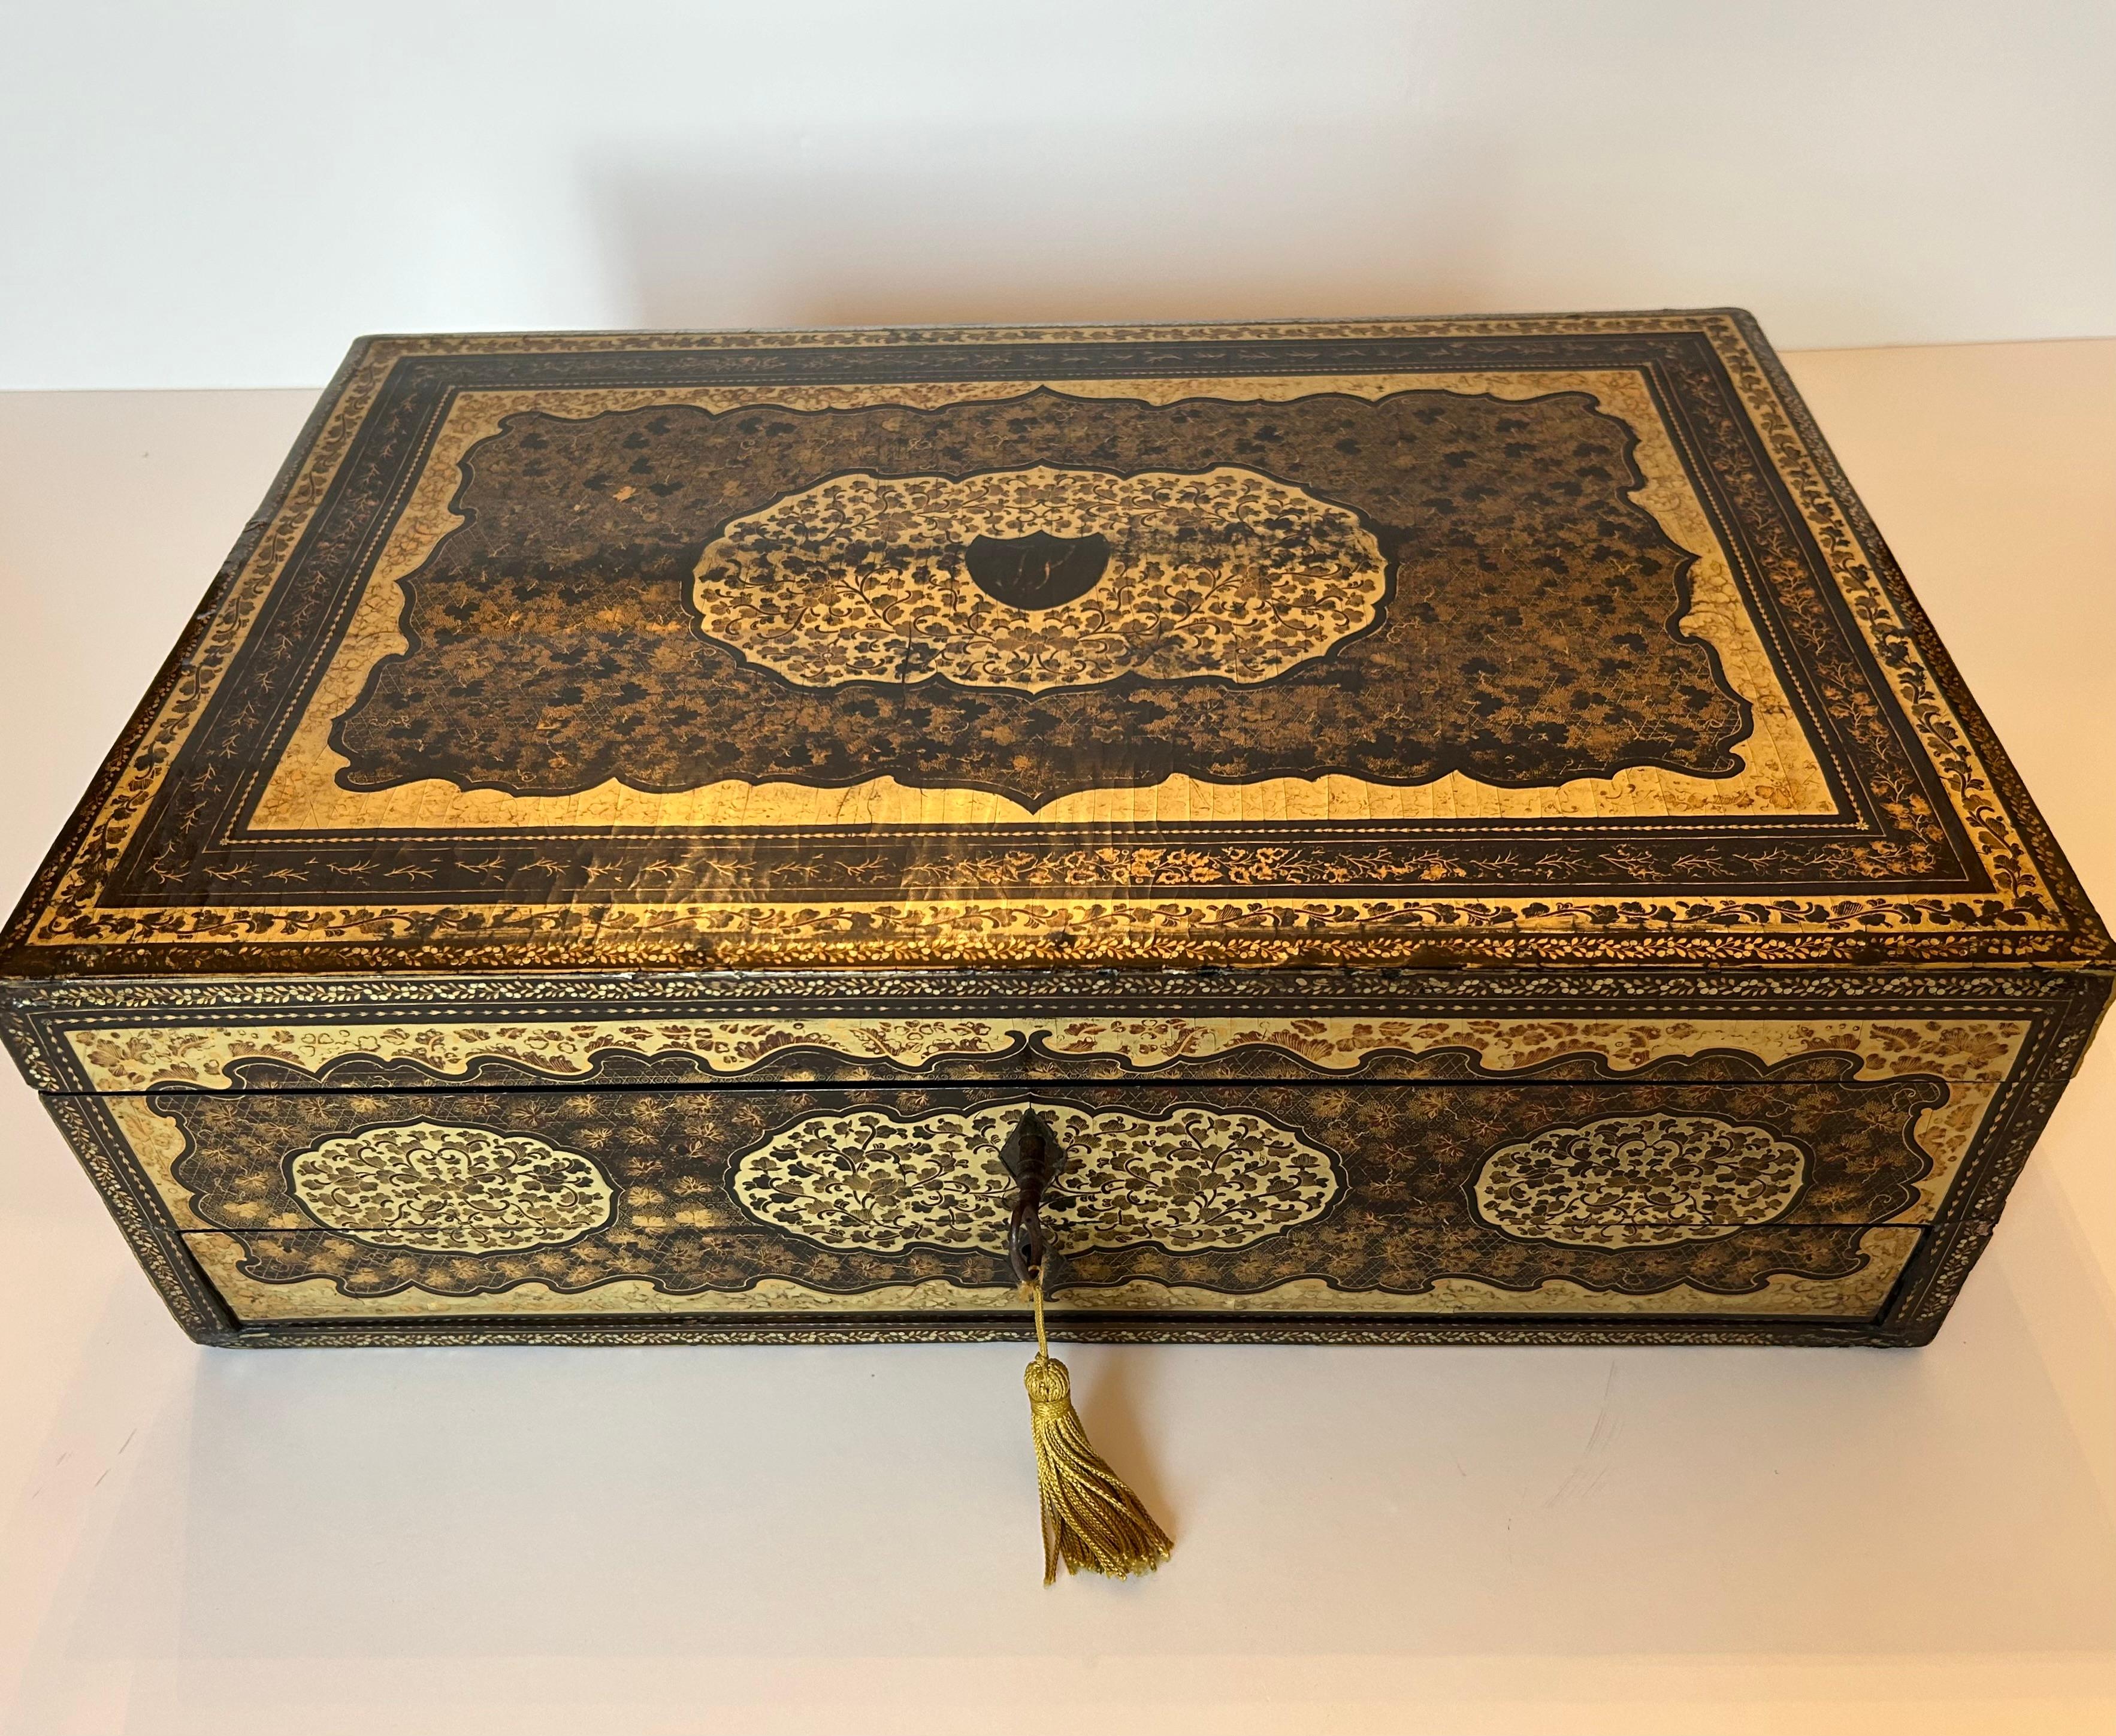 Il s'agit d'une remarquable boîte à couture laquée du 19e siècle avec de multiples compartiments à l'intérieur.
L'extérieur est décoré de motifs élaborés, noirs et dorés, comprenant des fleurs, des feuillages et des raisins. La partie supérieure de